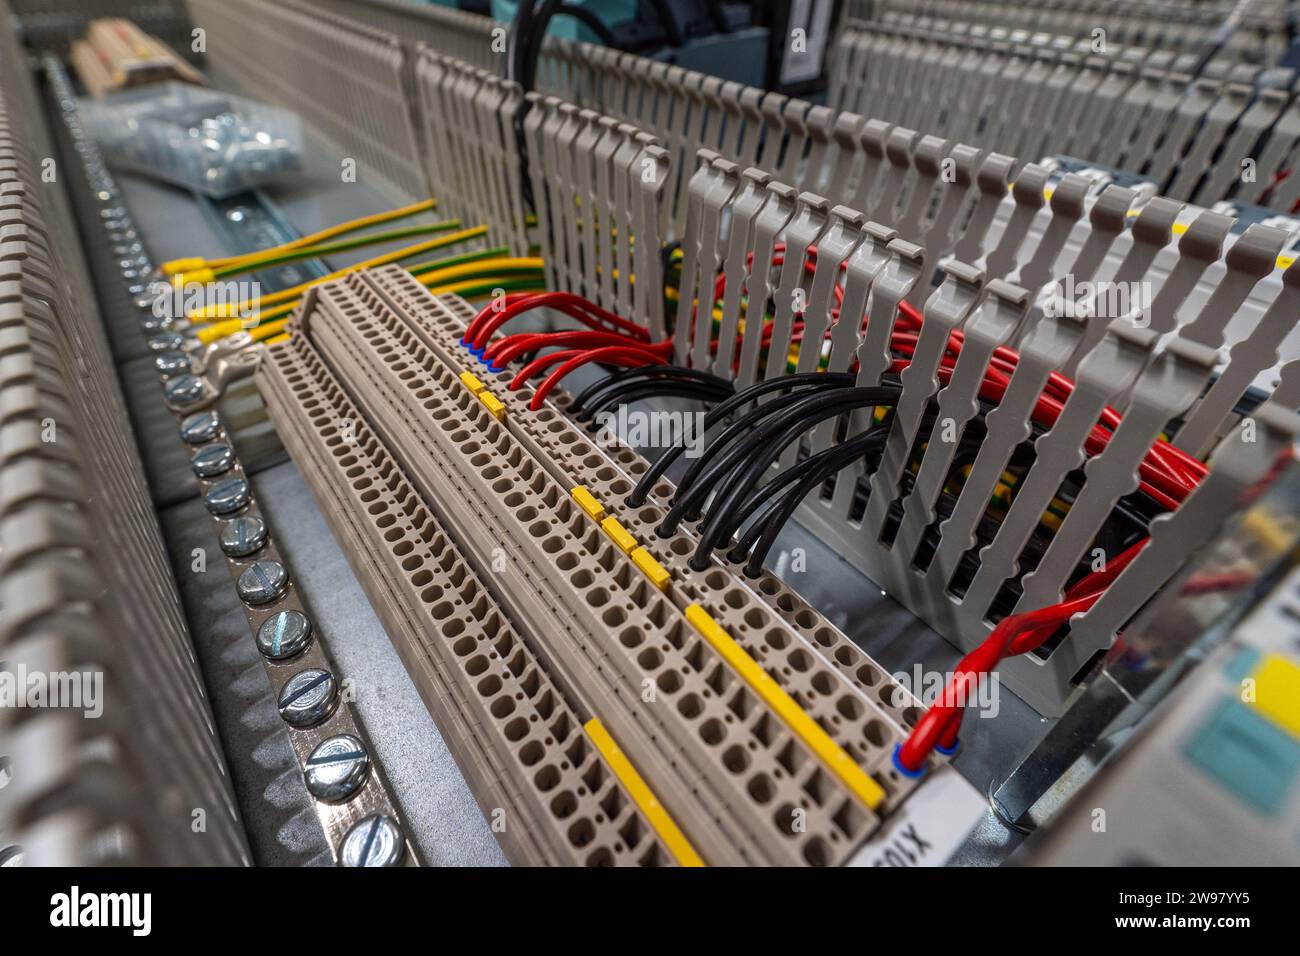 Eine werkseitige Montagelinie mit offenem Elektronikschrank, in der die komplizierten Kabel und Komponenten sichtbar werden Stockfoto